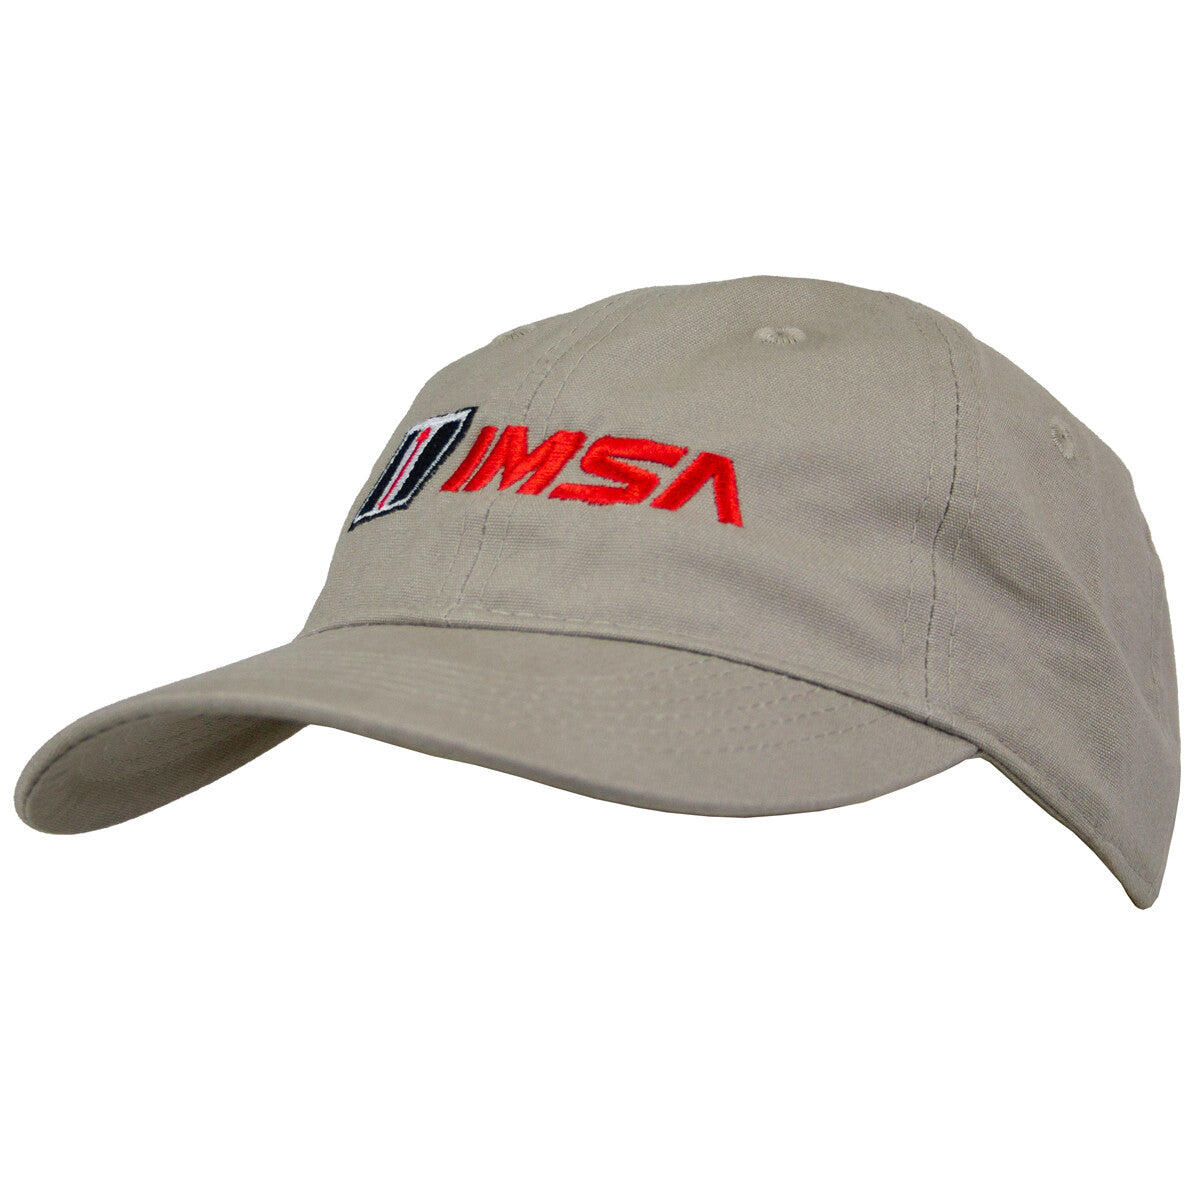 IMSA Brushed Canvas Dad Hat - Khaki